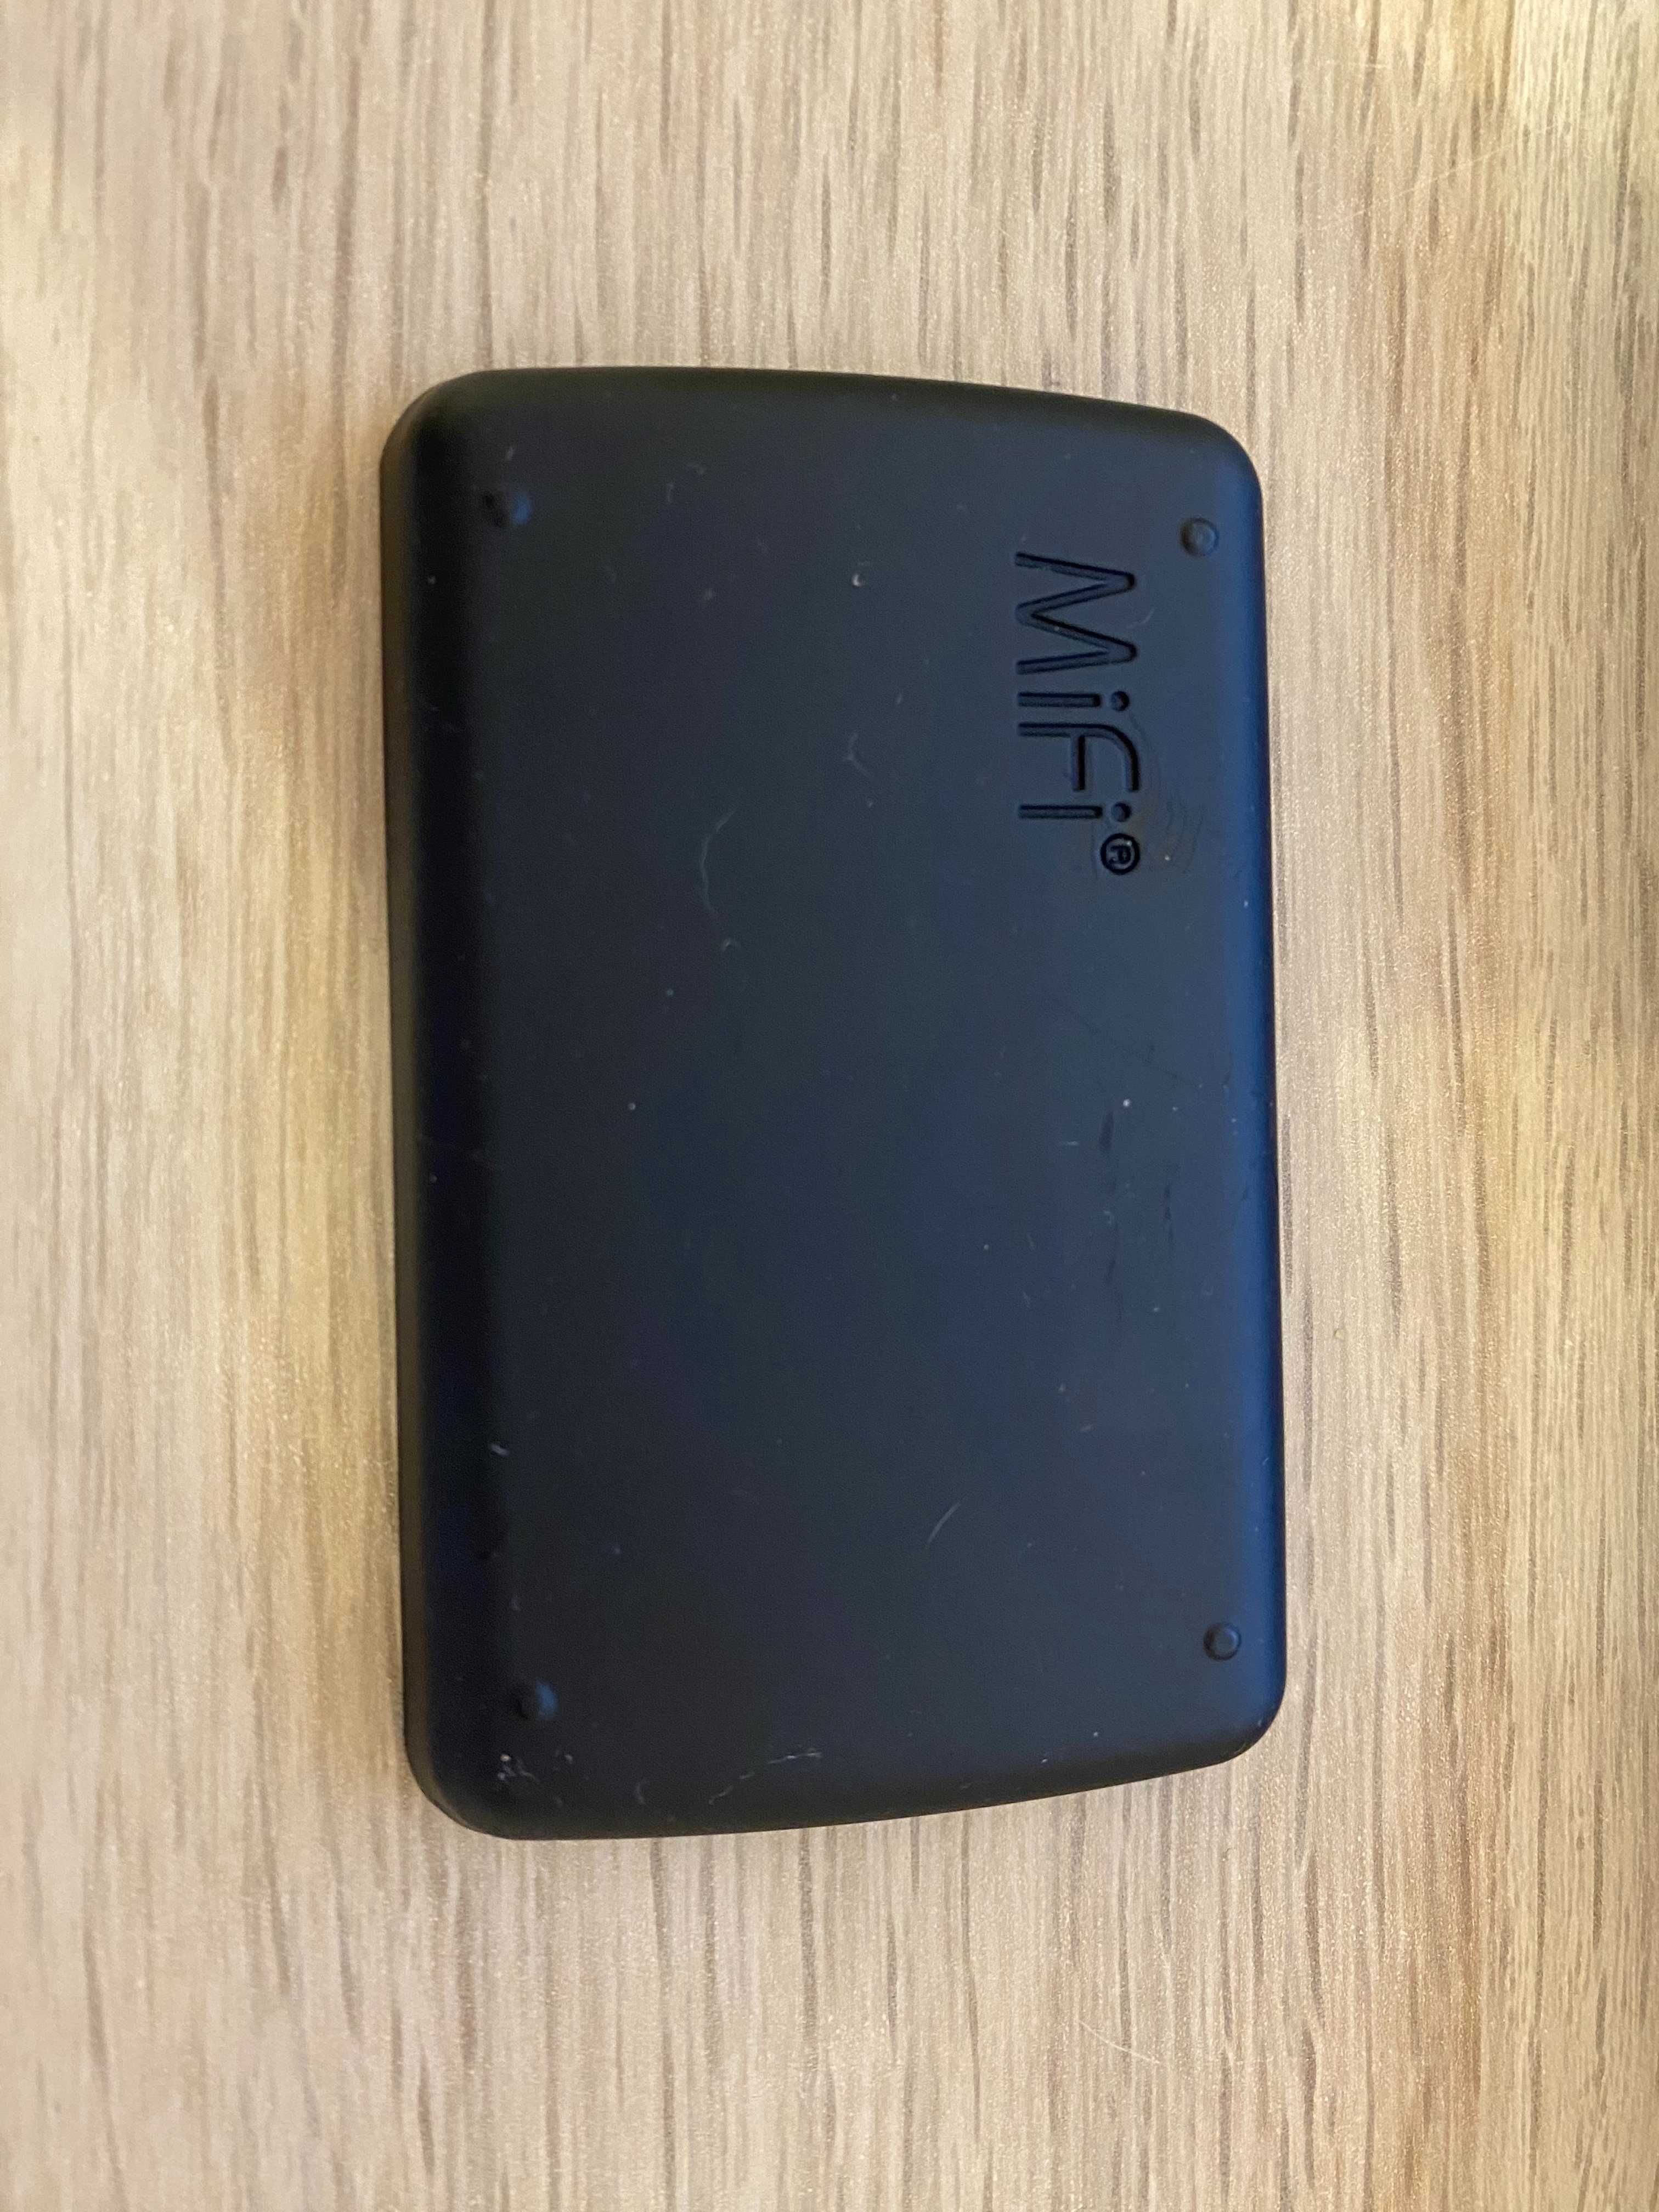 Novatel MiFi4620L (Verizon jetpack MiFi 4620L) 3G/4G CDMA/GSM/LTE